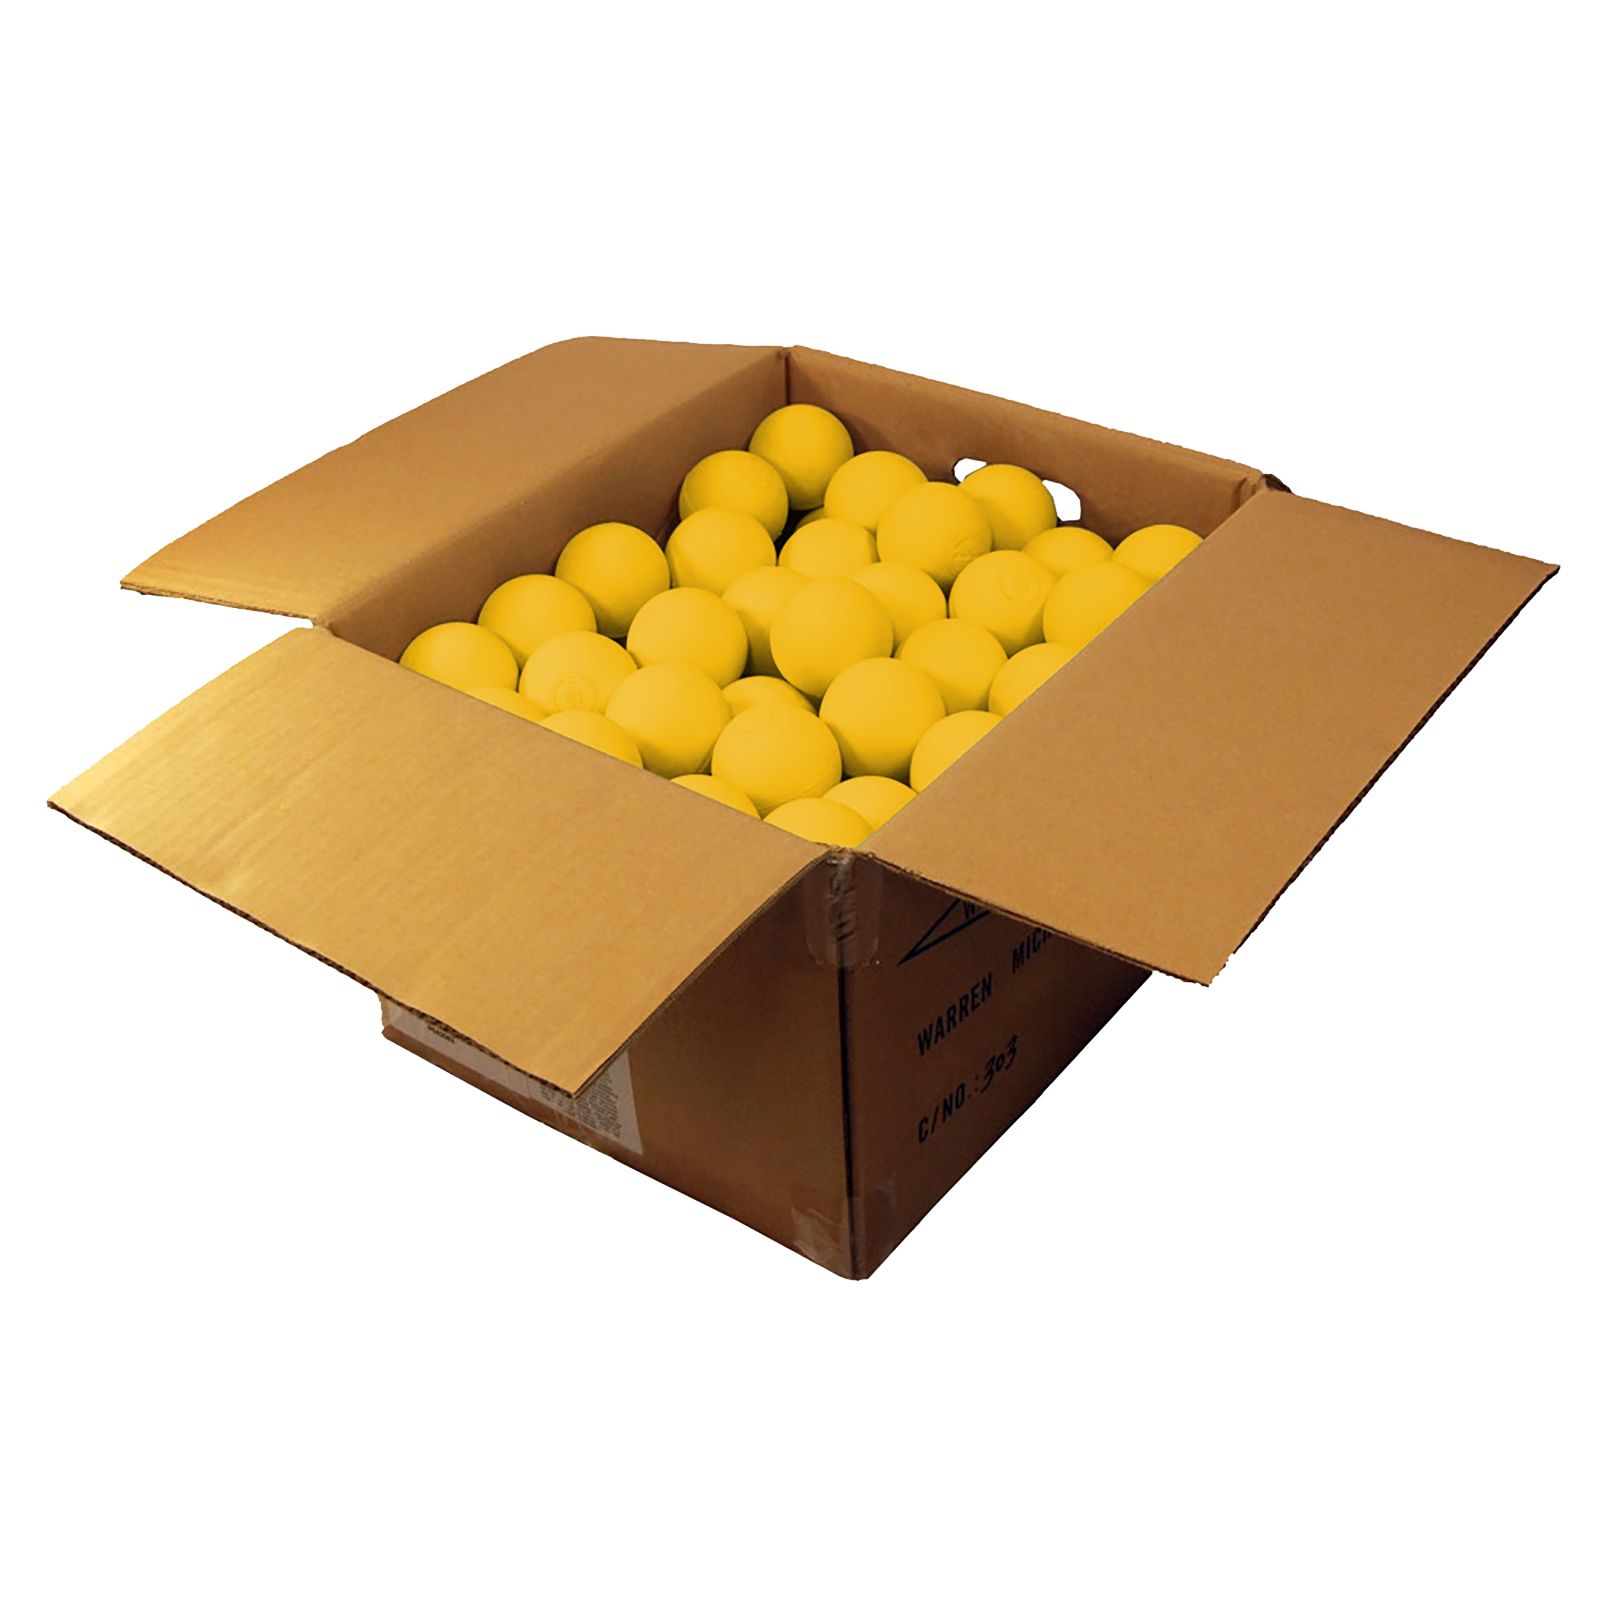 120 NOCSAE/NFHS Balls, Yellow image number 0